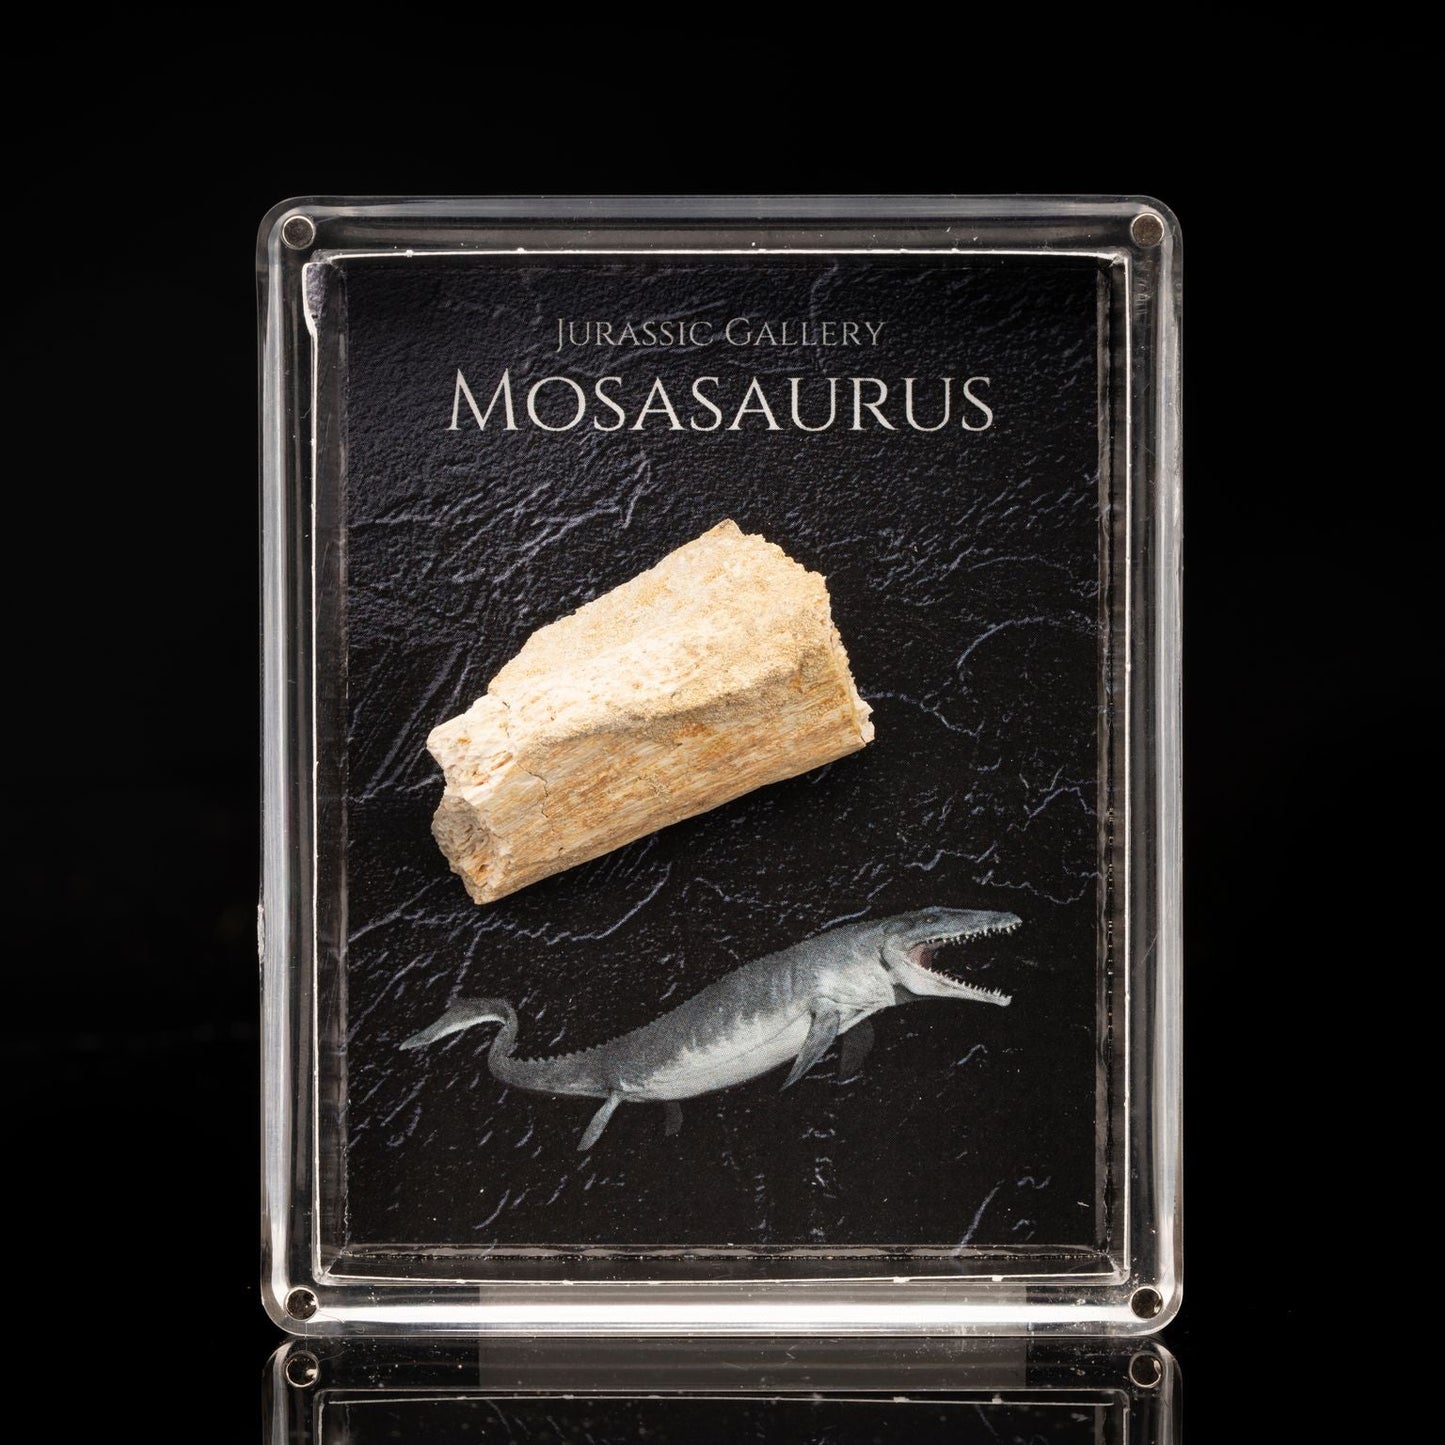 Caja de fósiles de mosasaurus